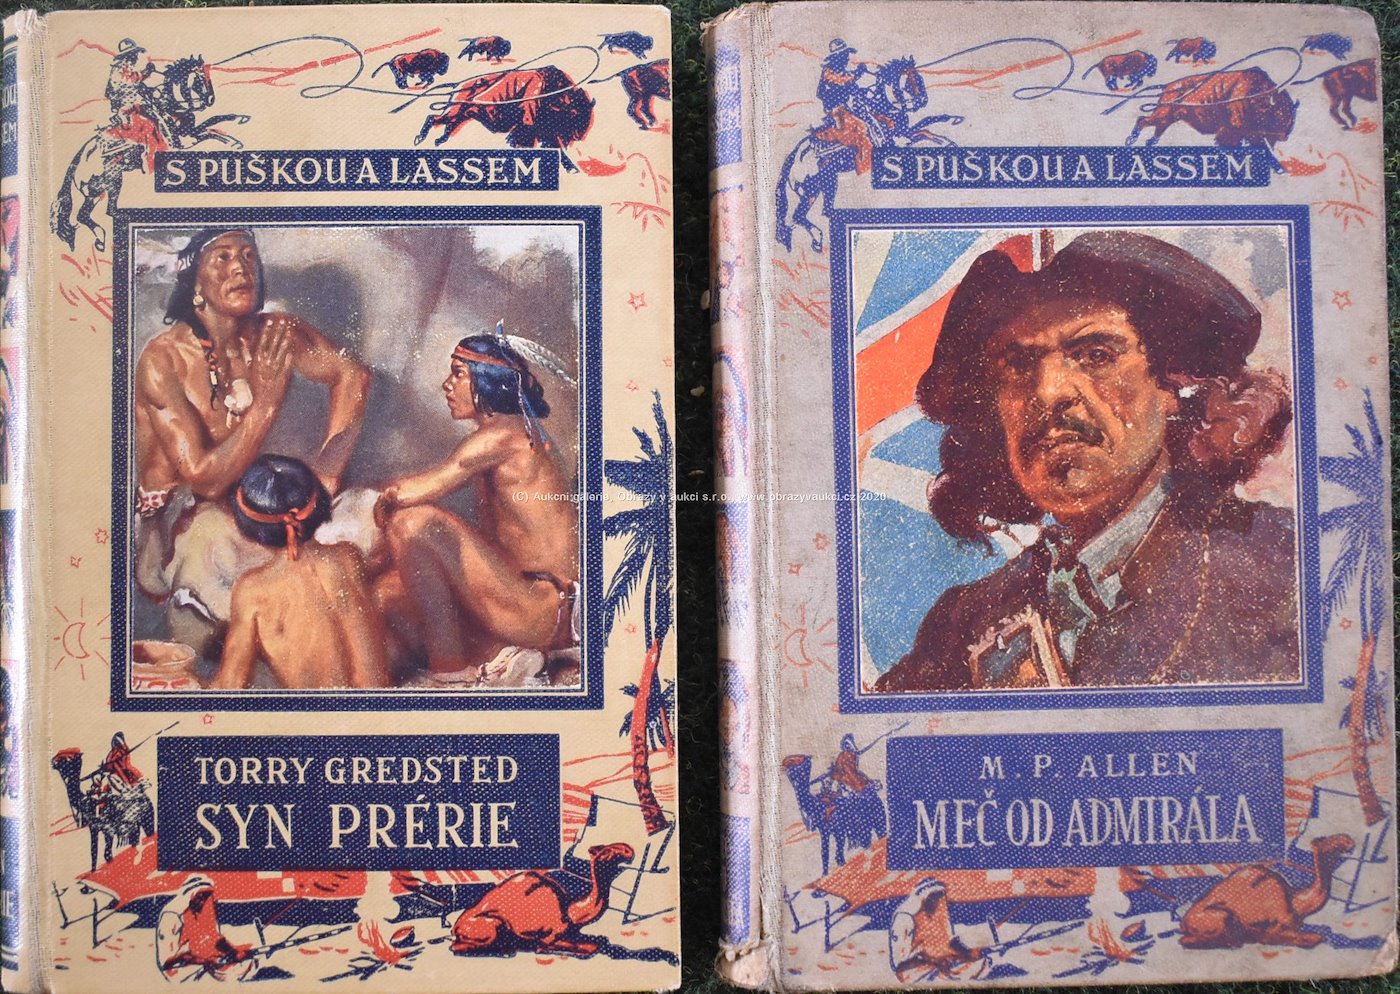 T.Gredsted, M.P.Allen, Z.Burian - Soubor 2 knih z edice S puškou a lassem